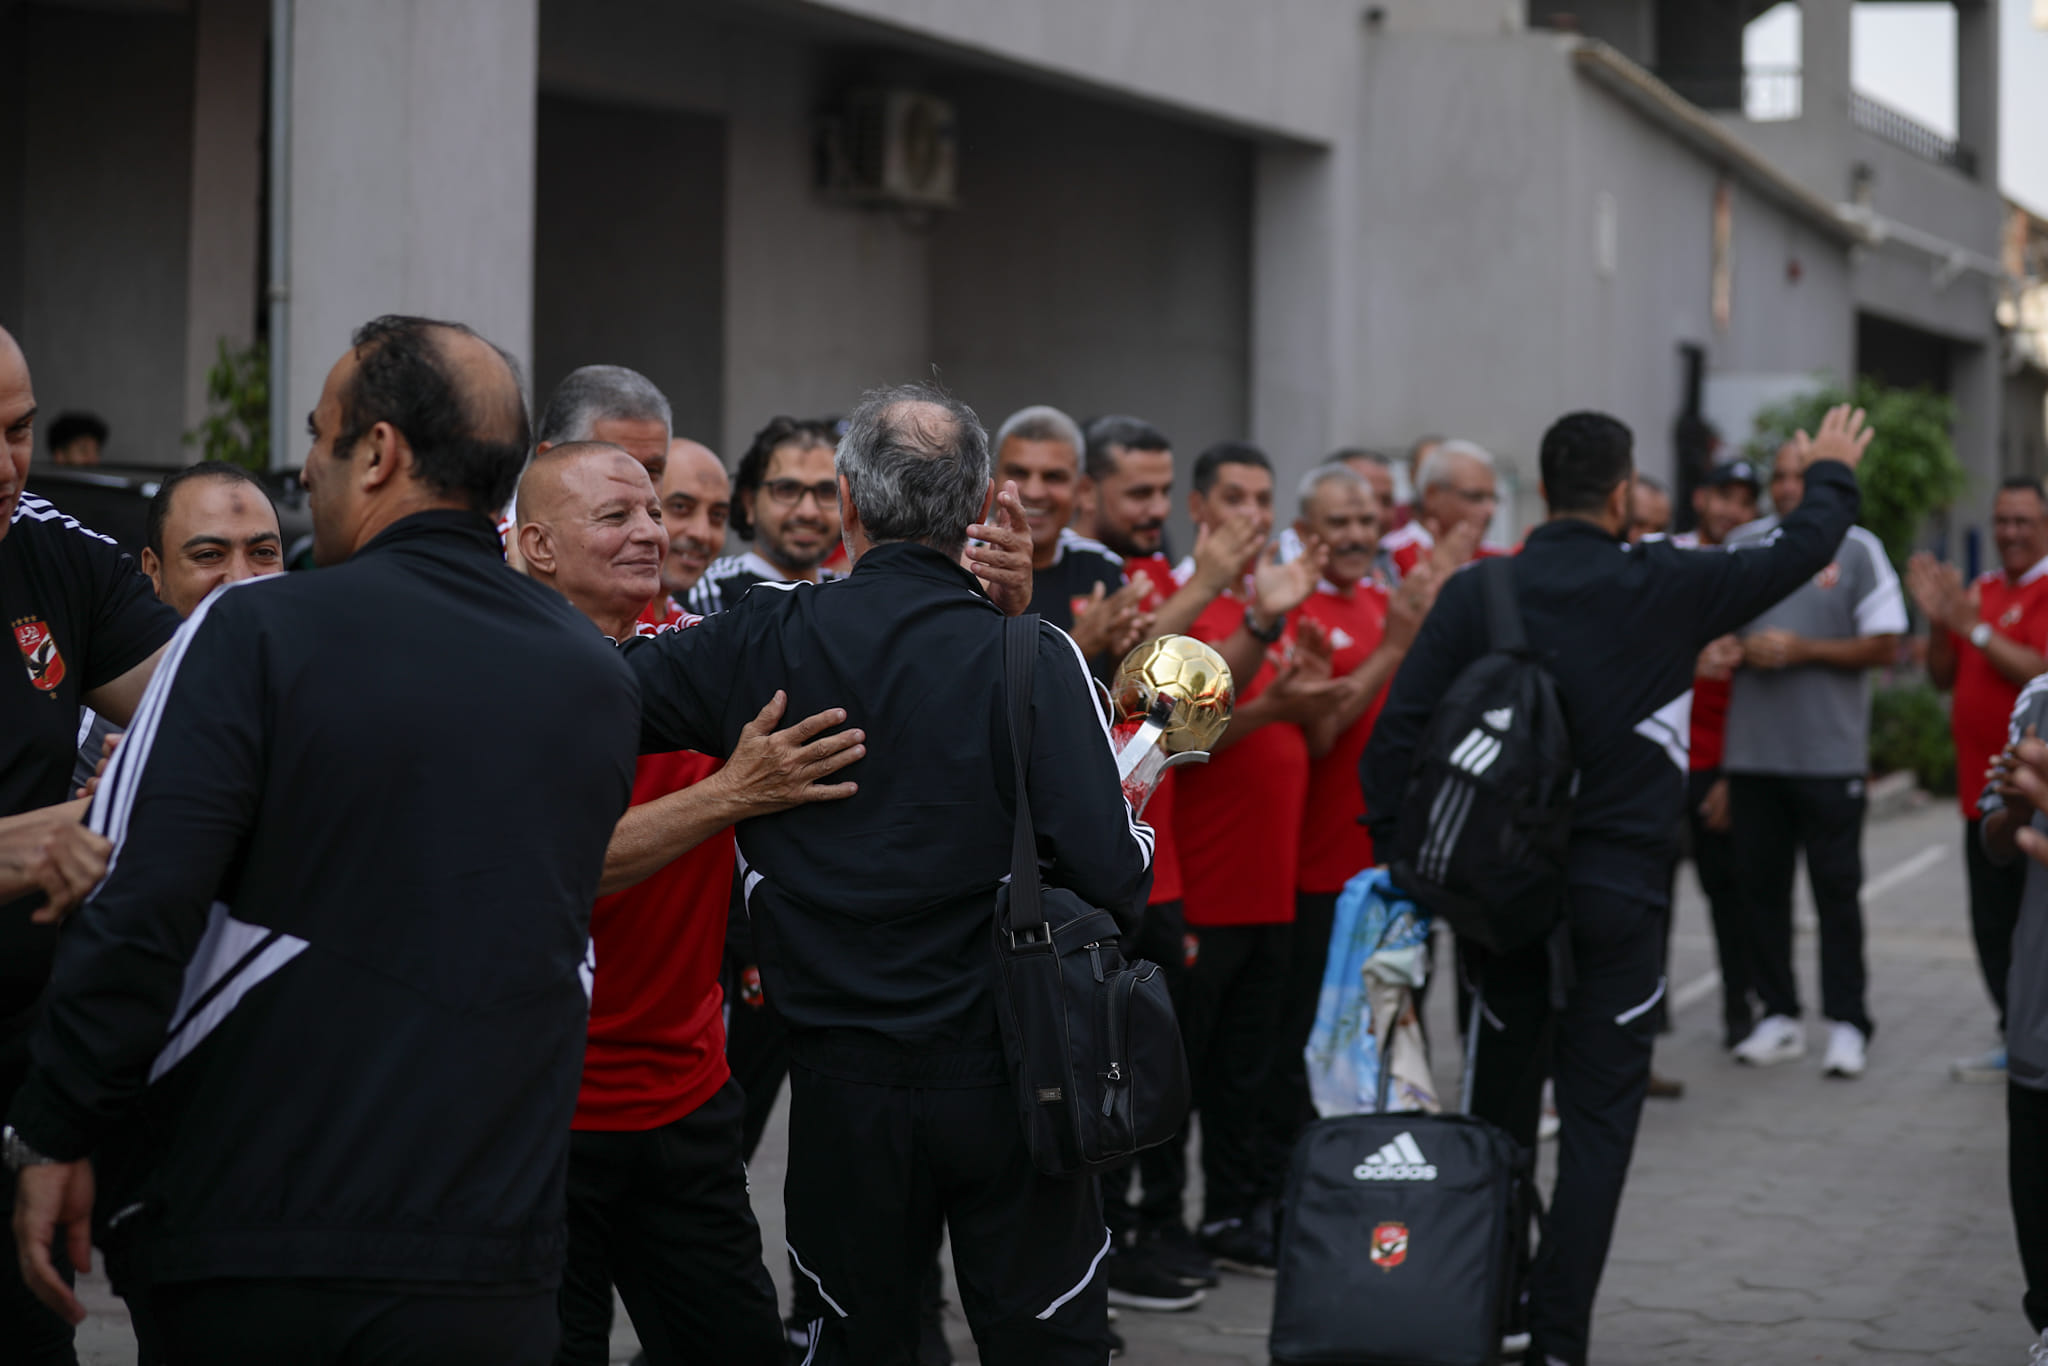 فريق الاهلي يصل النادي بعد التتويج بالسوبر المصري (14)